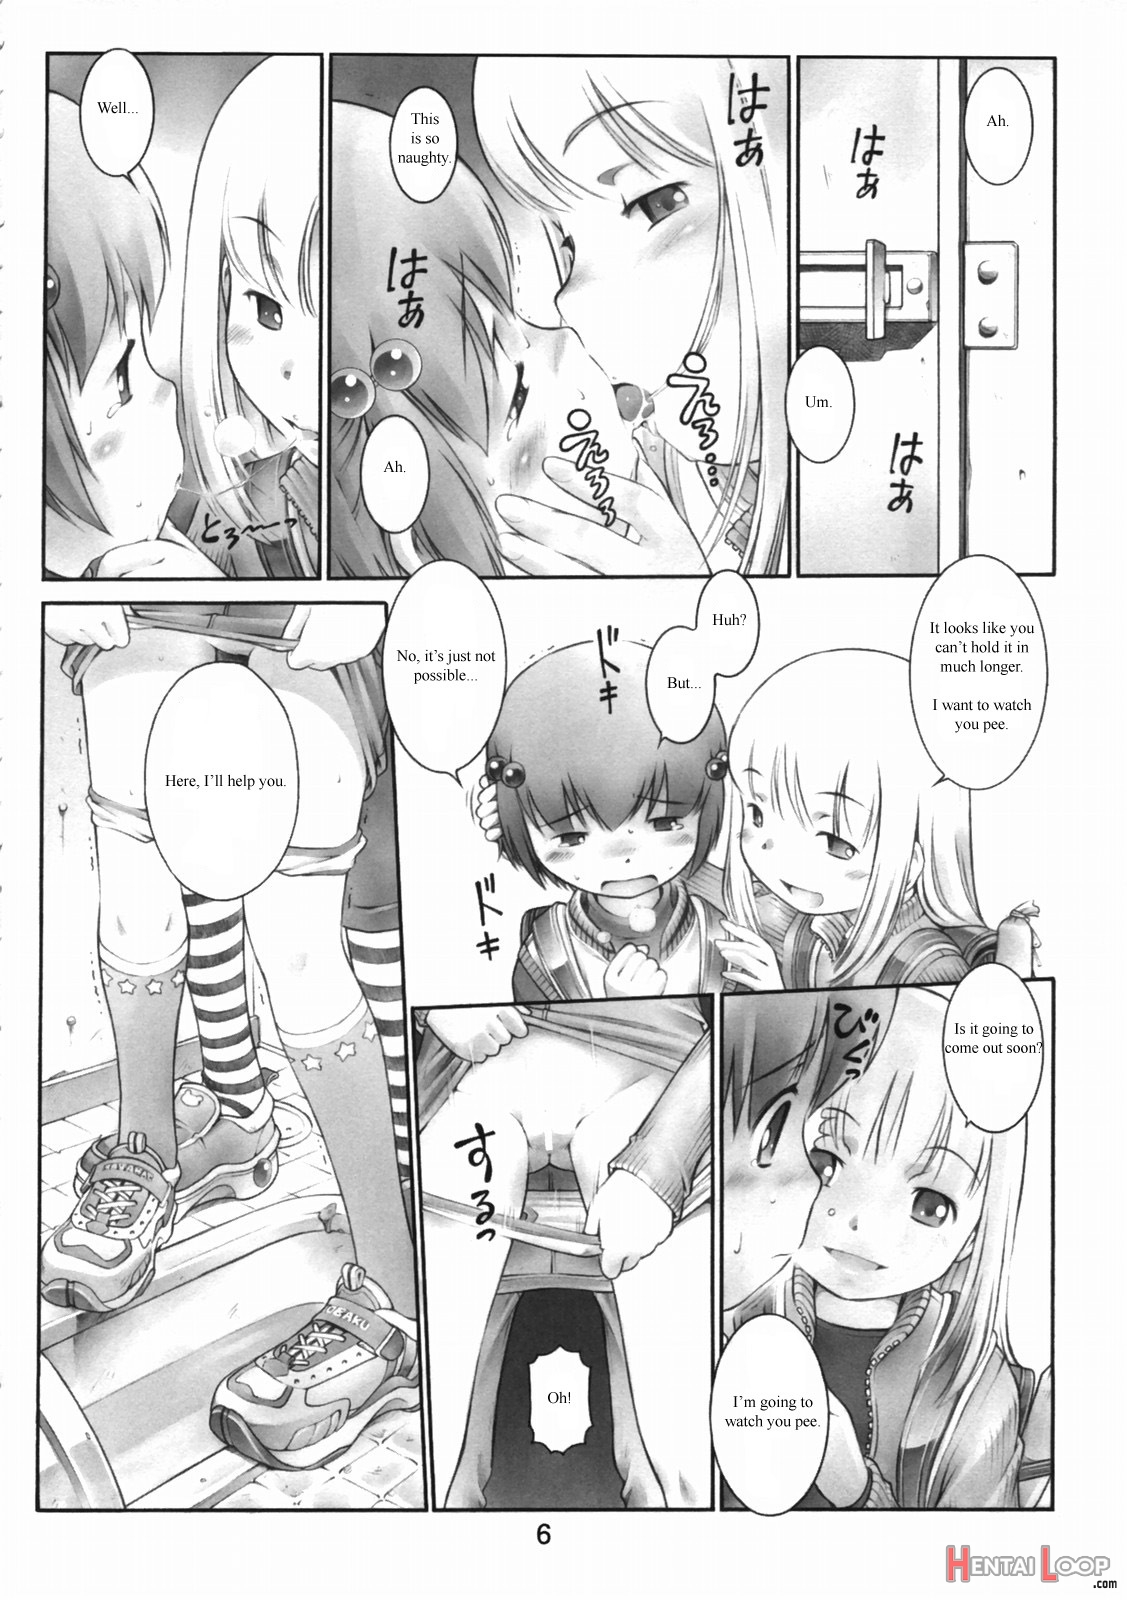 Oshiri Kizzu 12 page 5